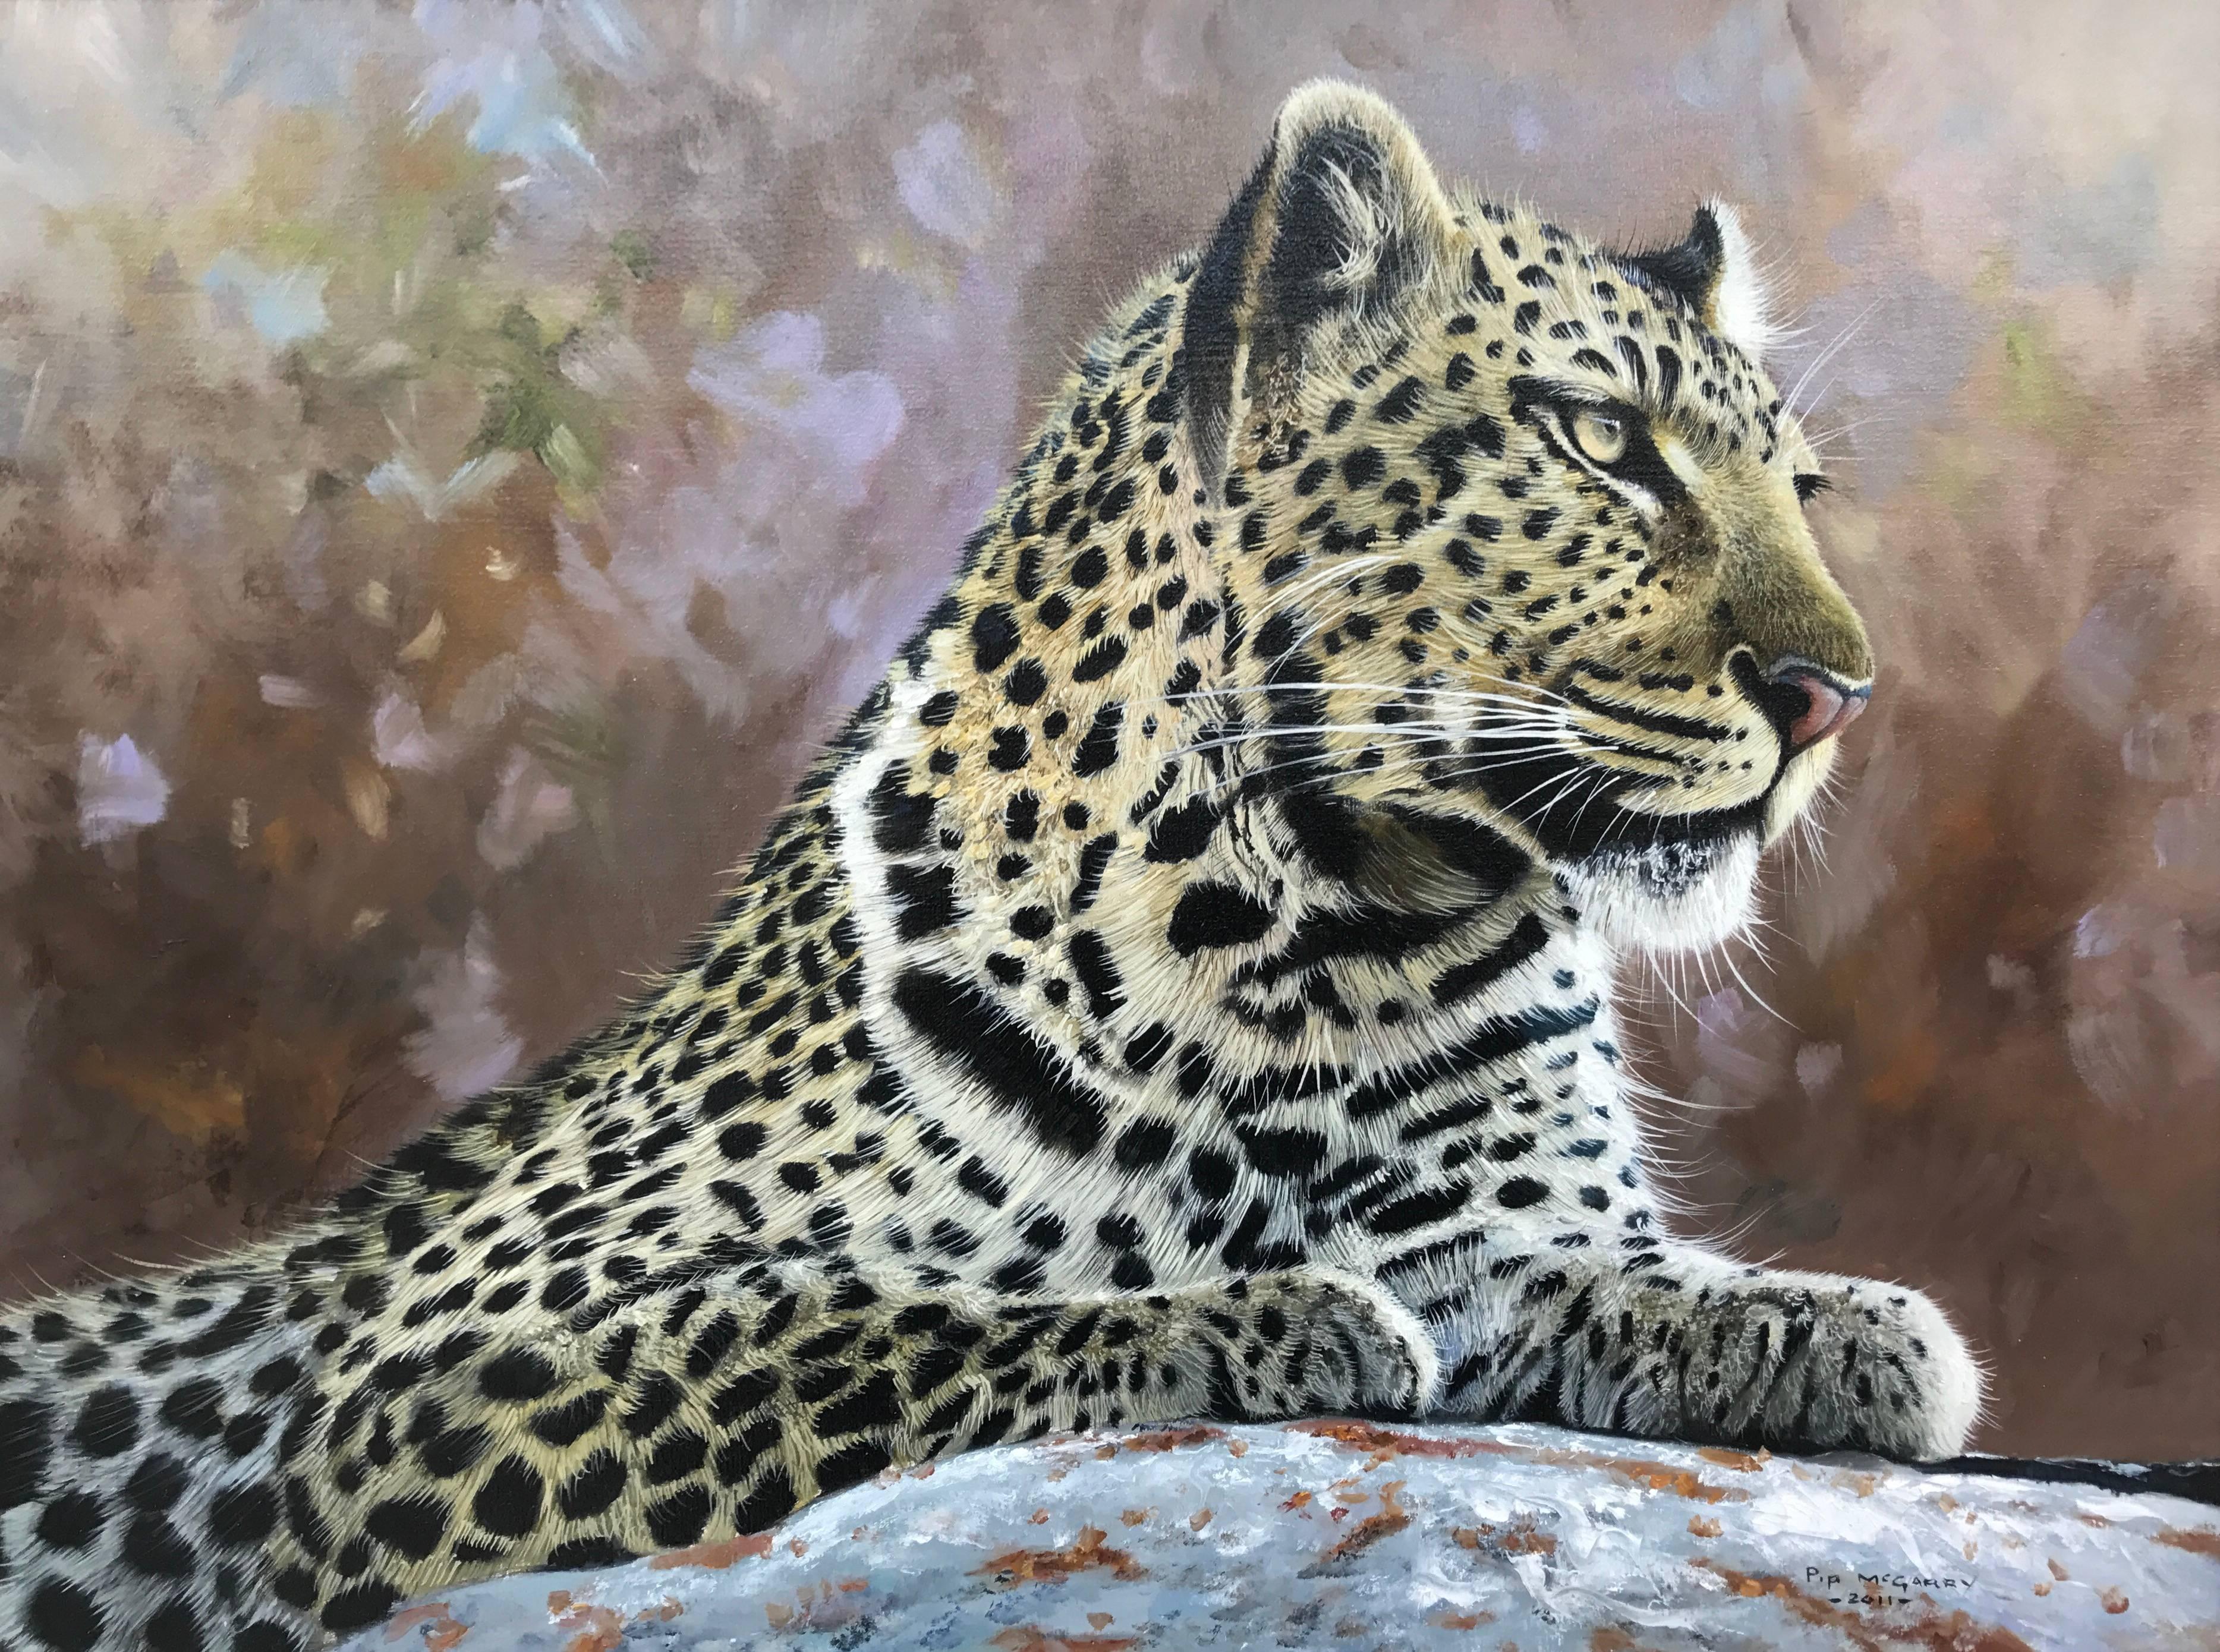 Leopardenporträt, Wildkatze, Gemälde aus der britischen Tierwelt, Tigerkünstler – Painting von Pip McGarry